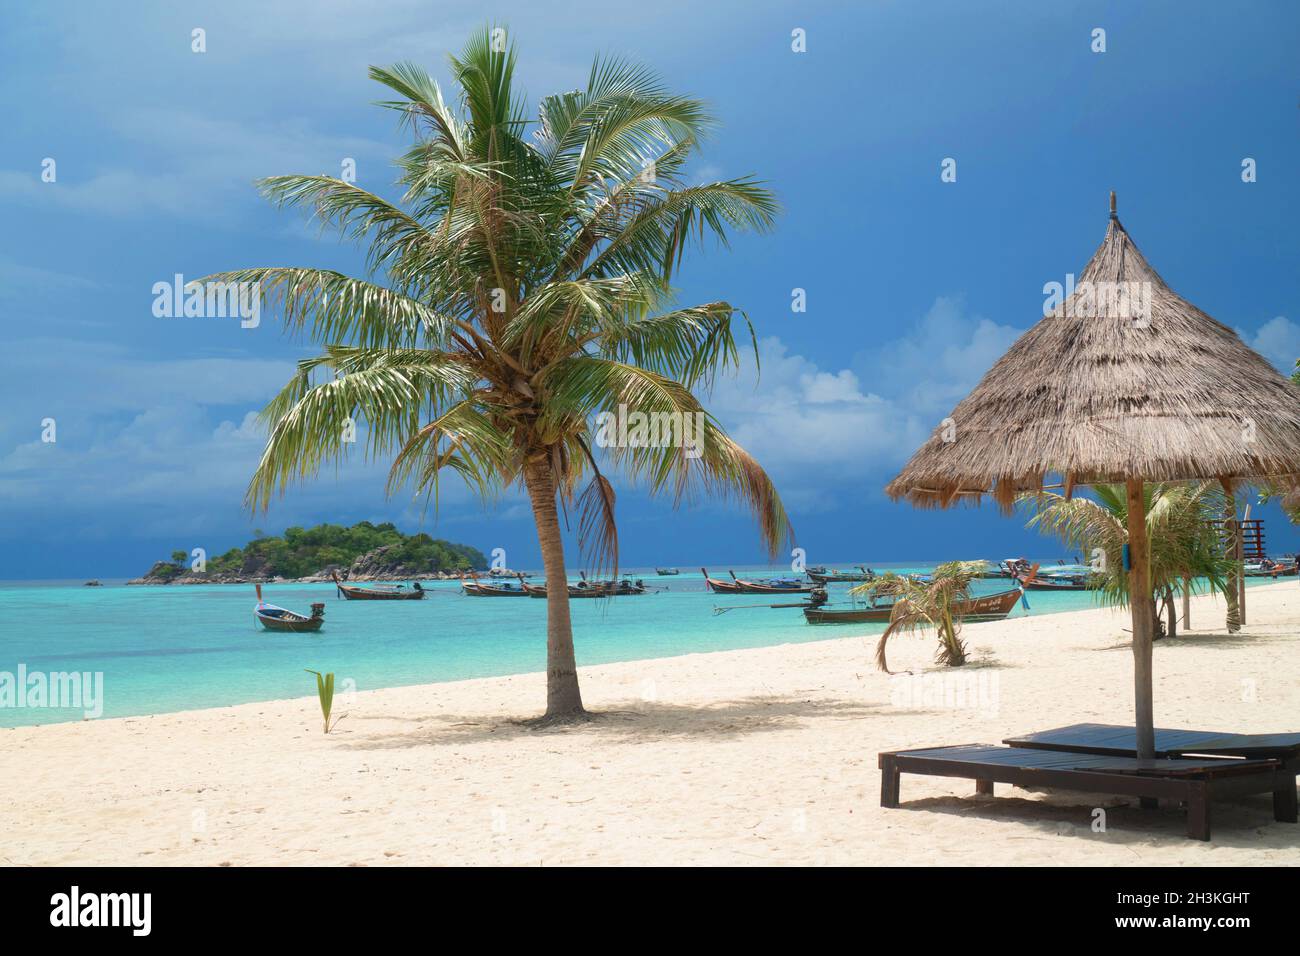 Spiaggia tropicale con sdraio, ombrelloni, barche e palme Foto Stock